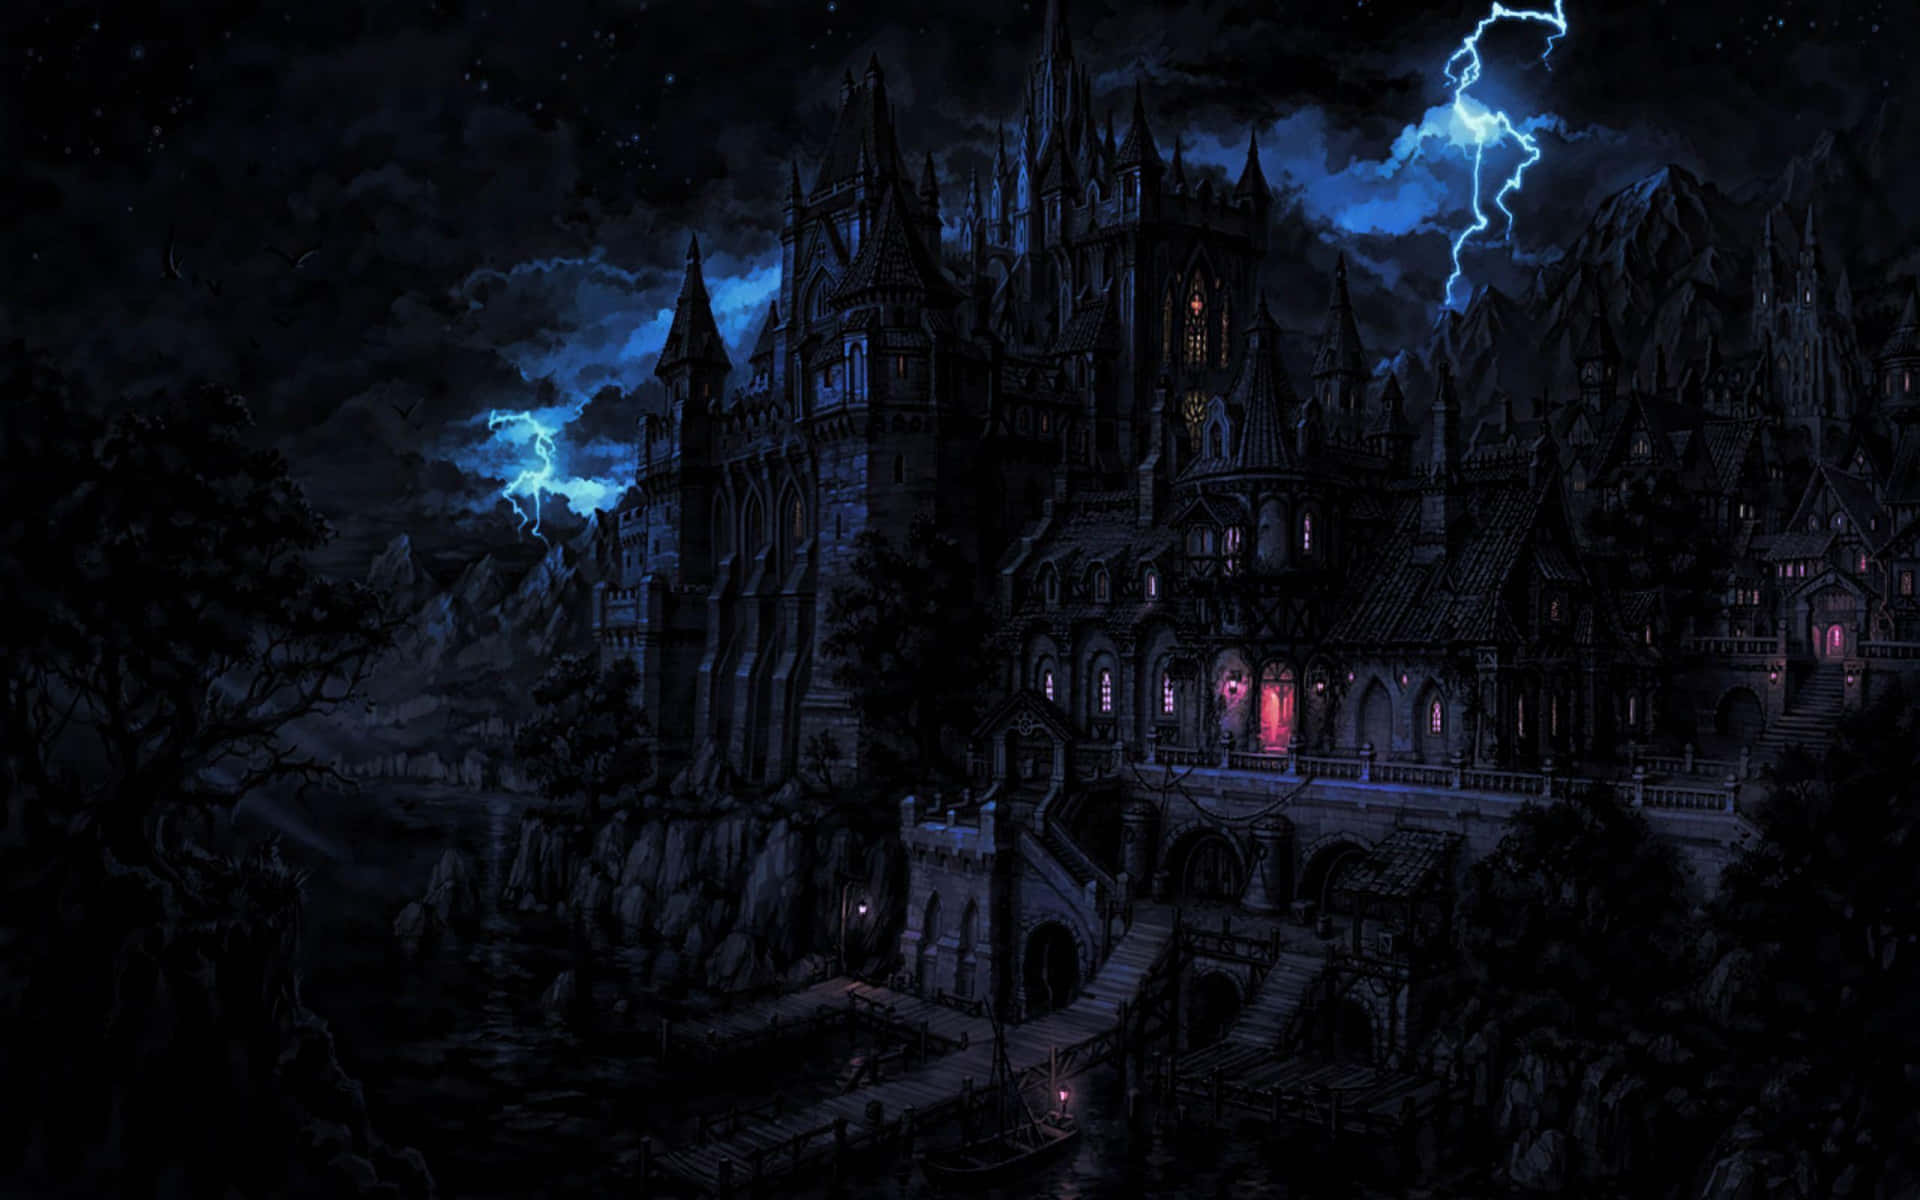 En mystisk og sulten vampyr kigger ud af et vindue til den månelammet by nedenunder. Wallpaper